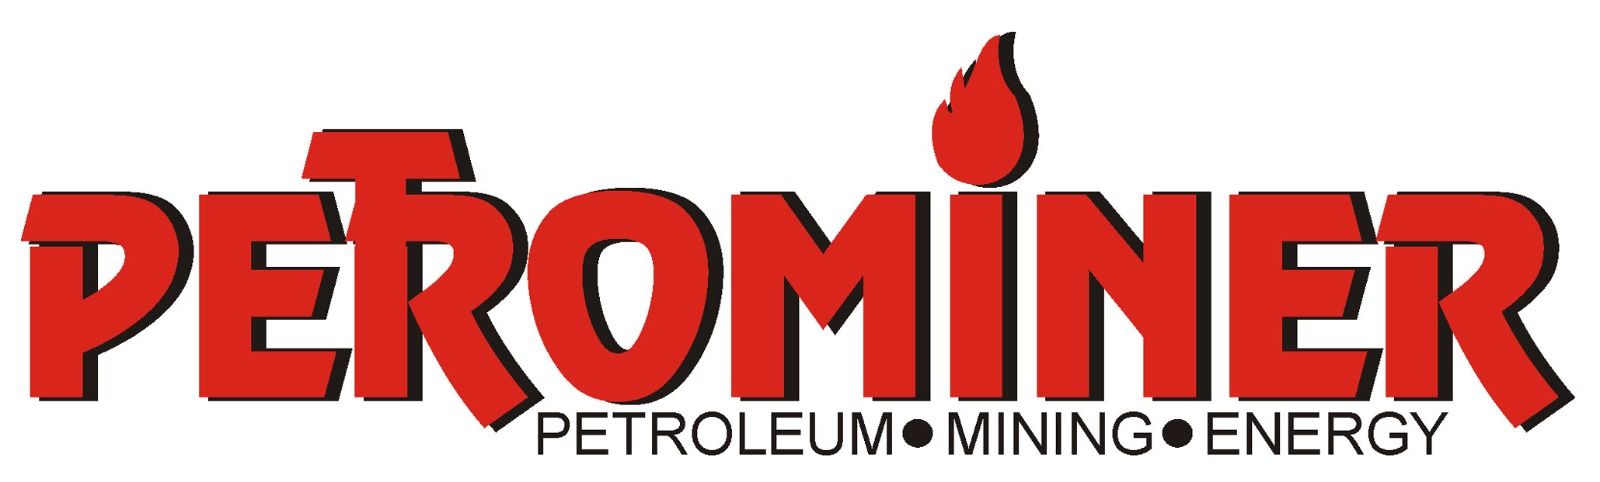 Petrominer